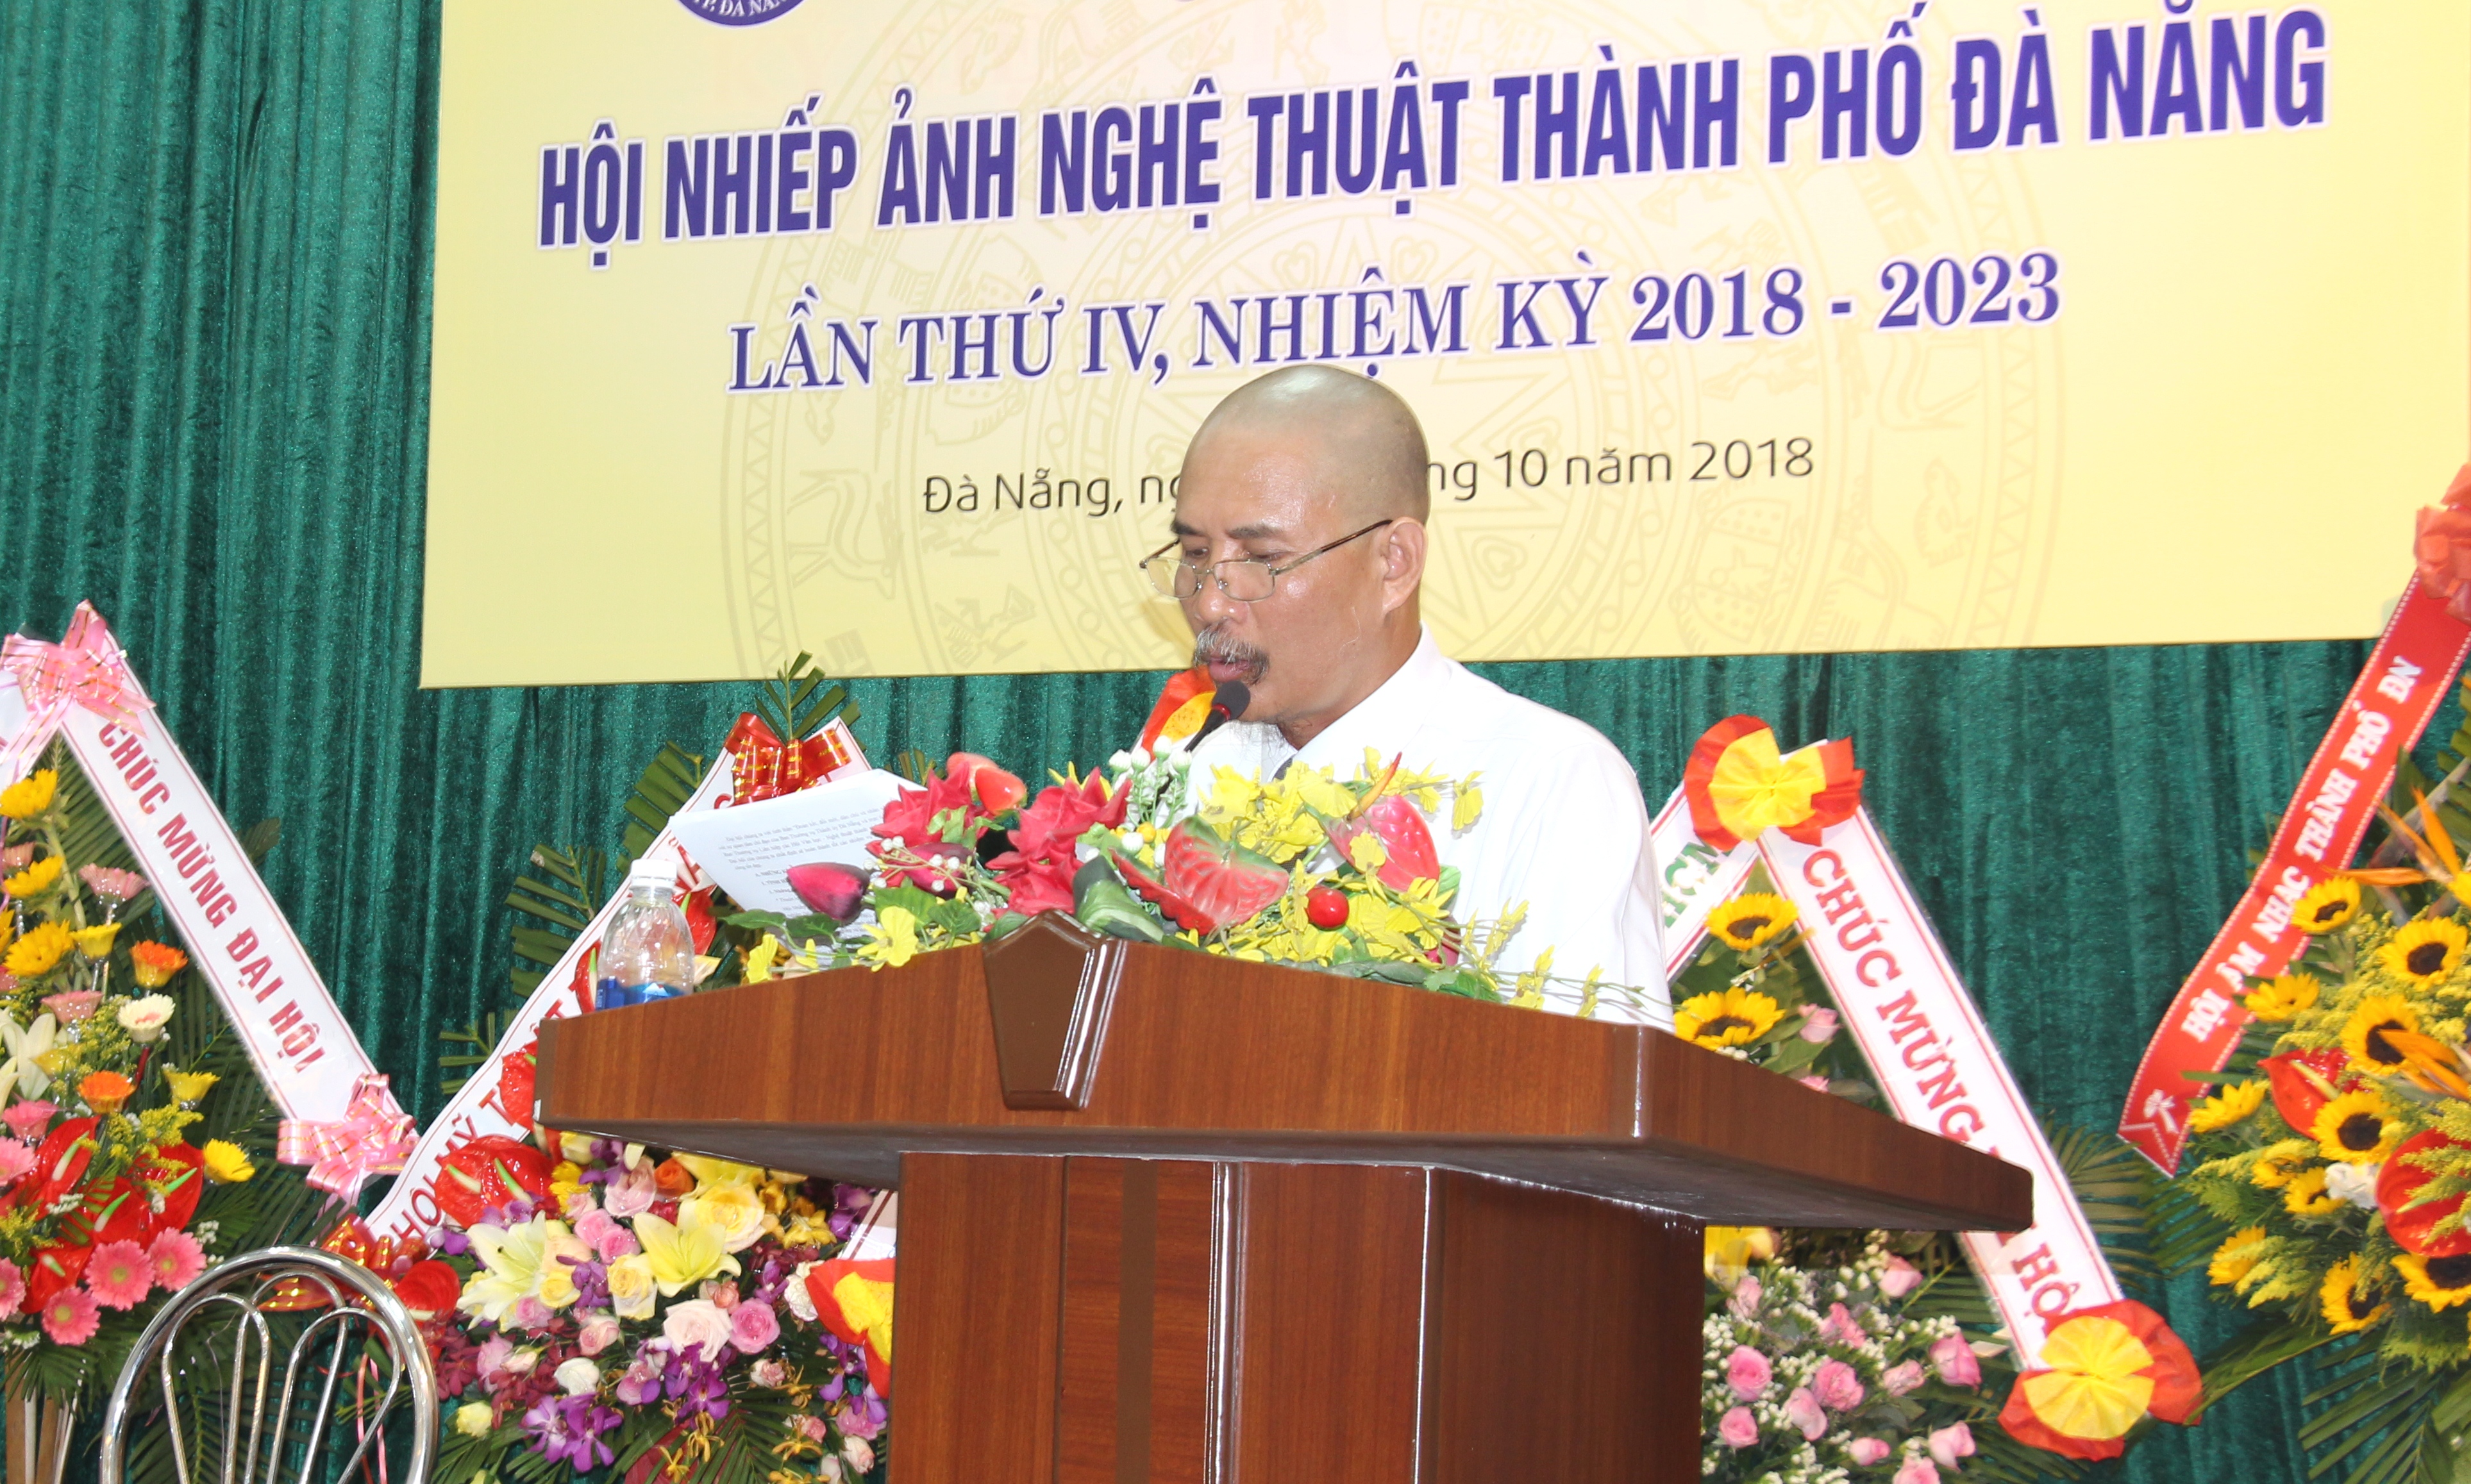 Đại hội Hội Nhiếp ảnh Nghệ thuật thành phố Đà Nẵng lần thứ IV (nhiệm kỳ 2018 - 2023)